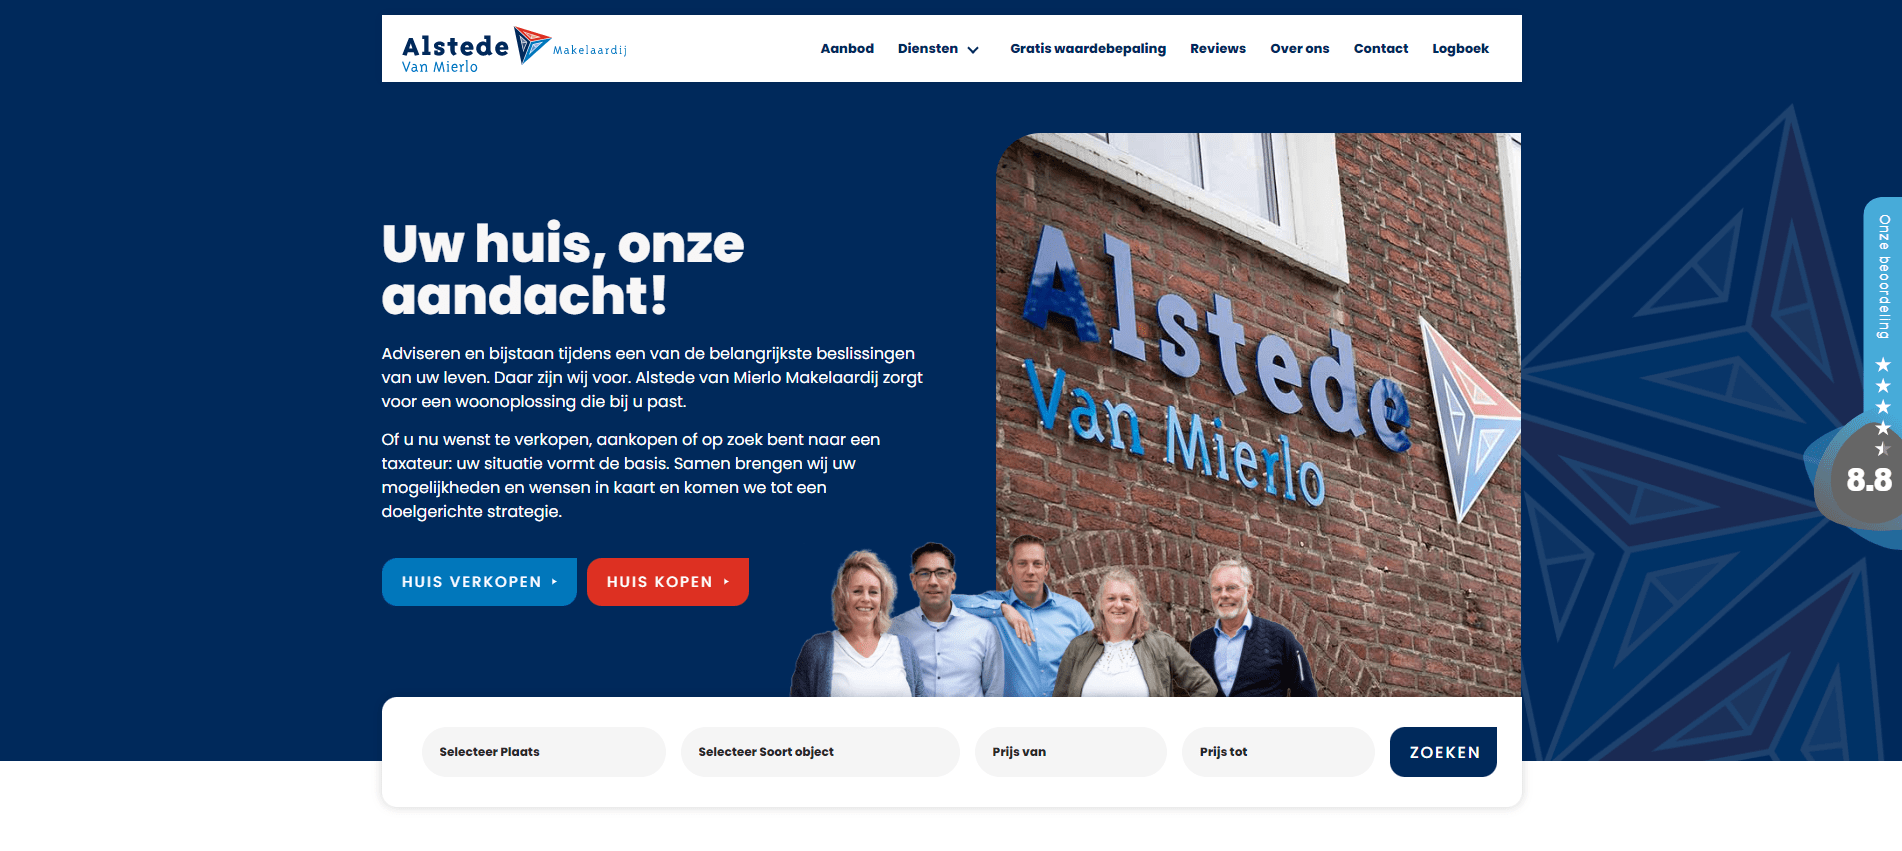 (c) Alstedevanmierlomakelaardij.nl